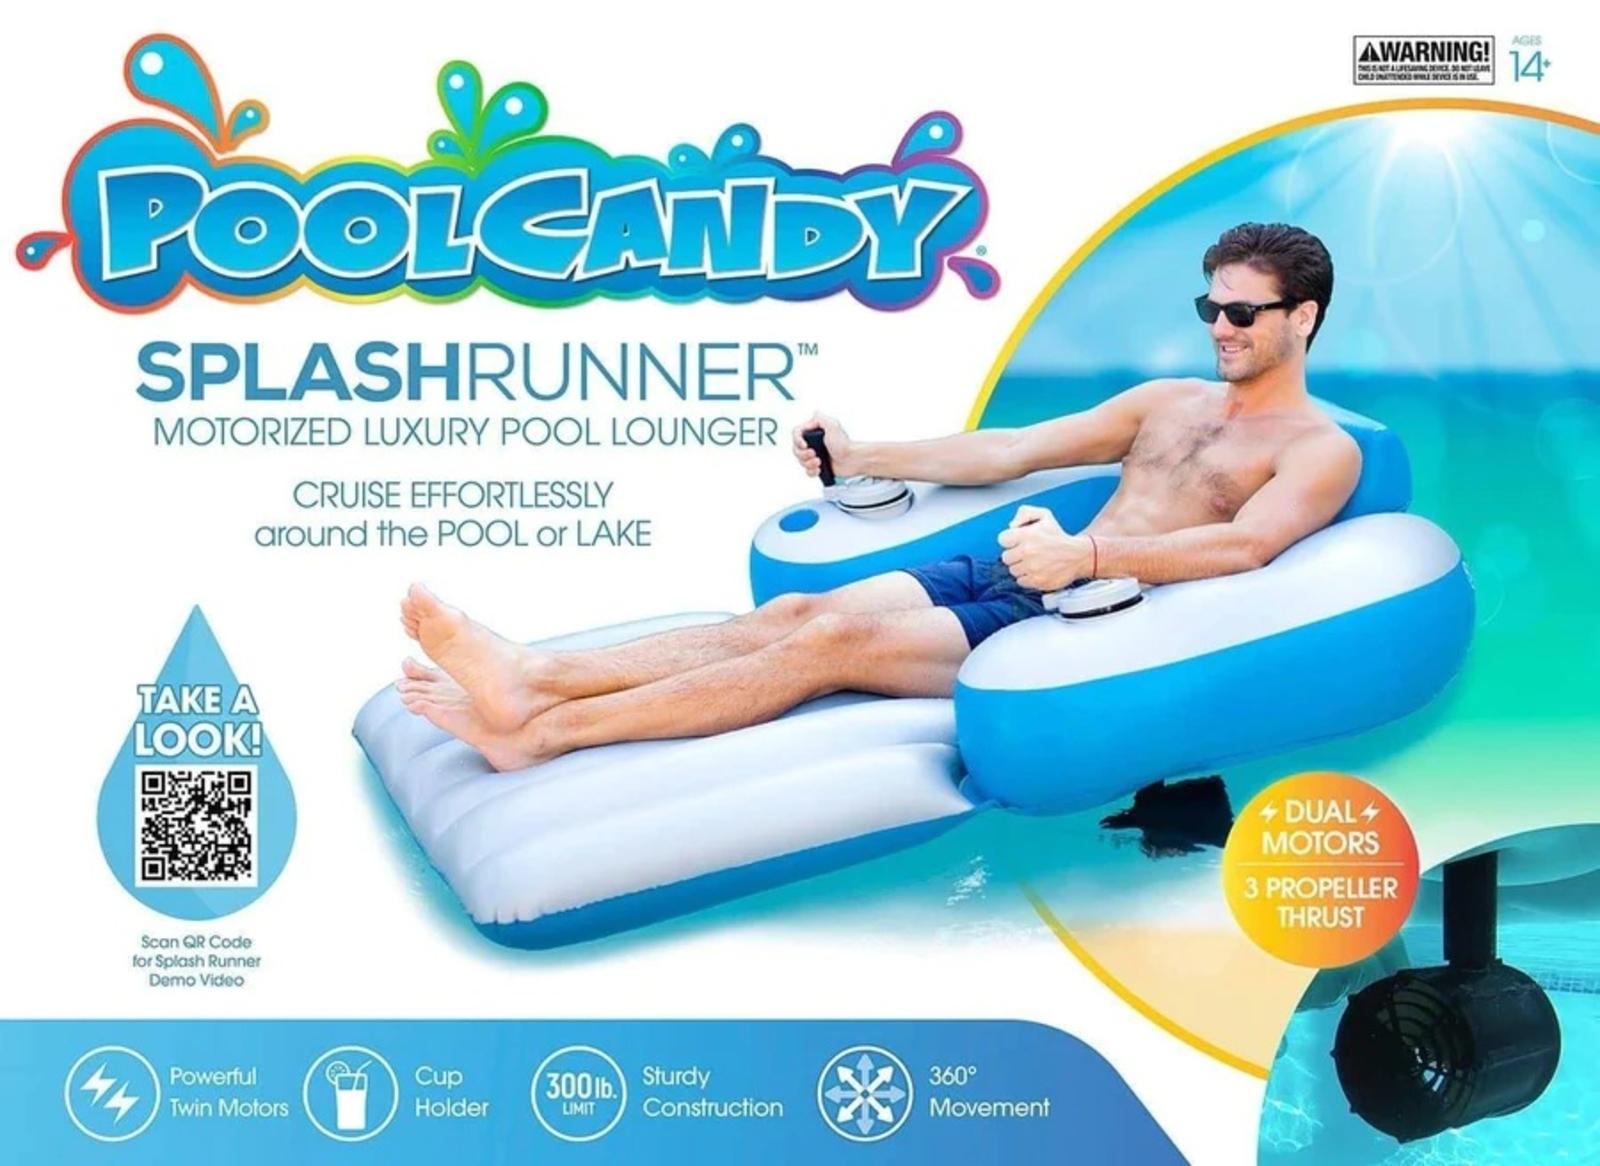 Splash Runner Motorized Pool Lounger PoolCandy